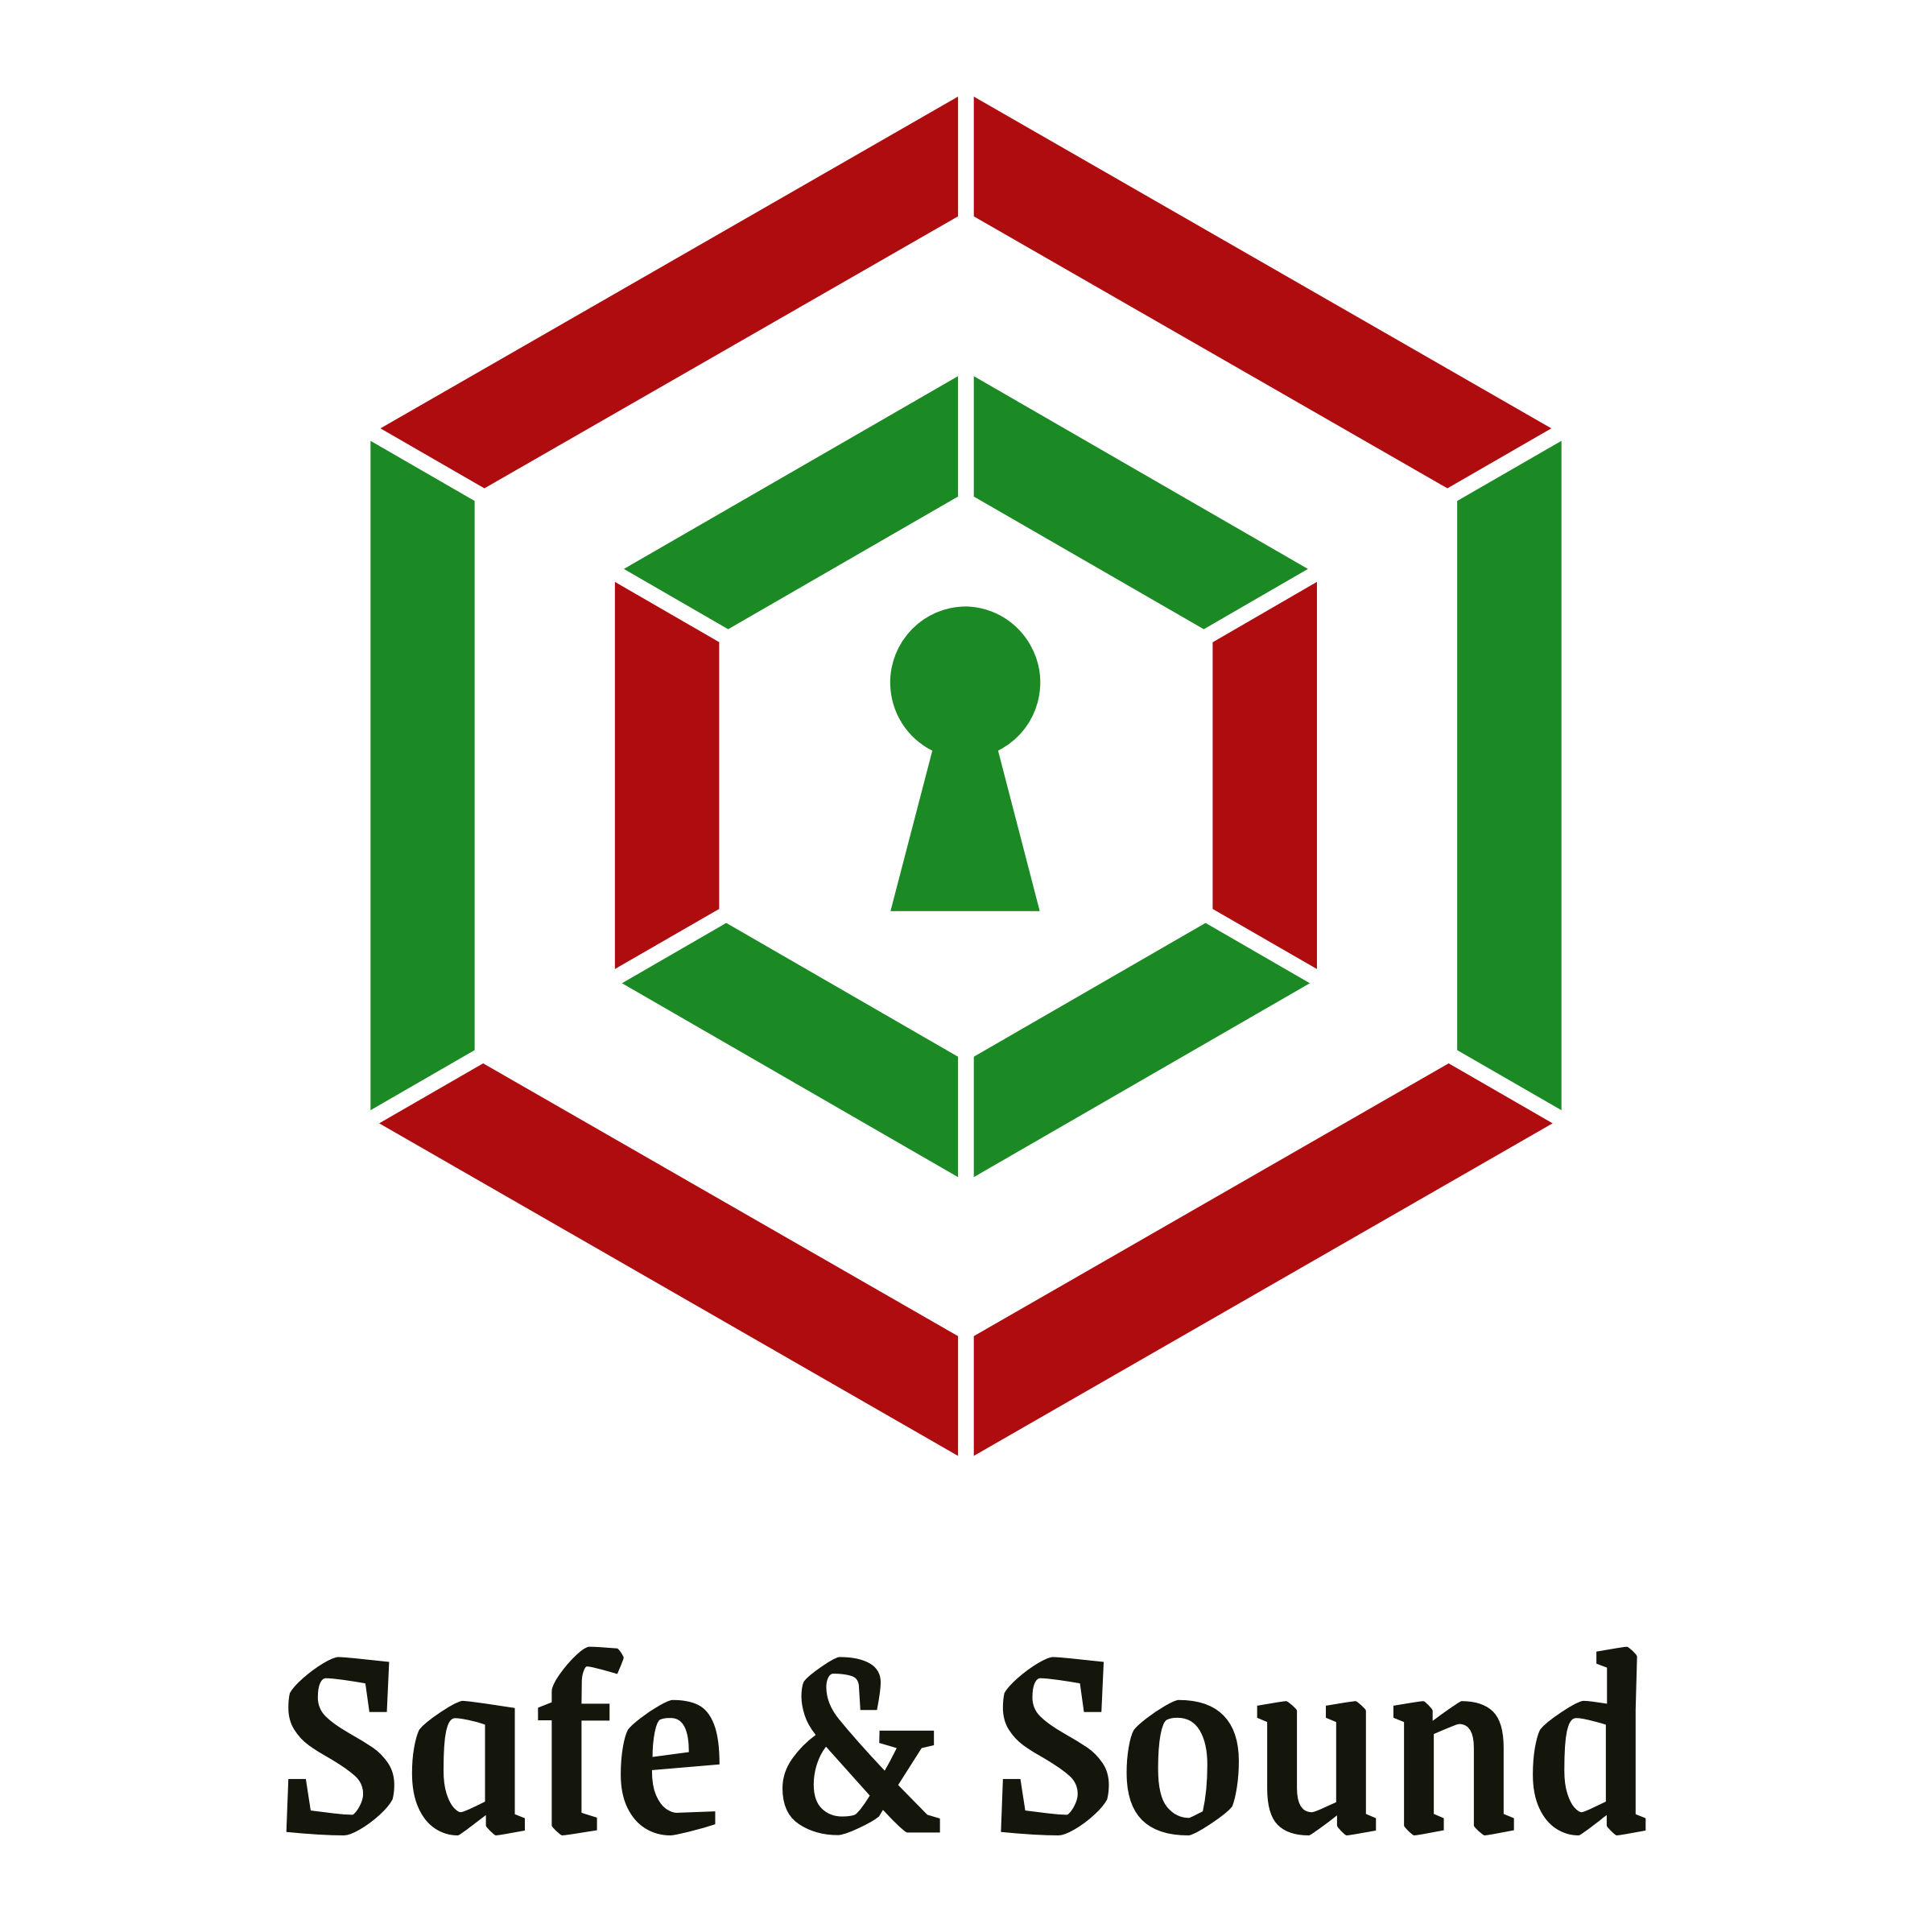 safety logos ideas